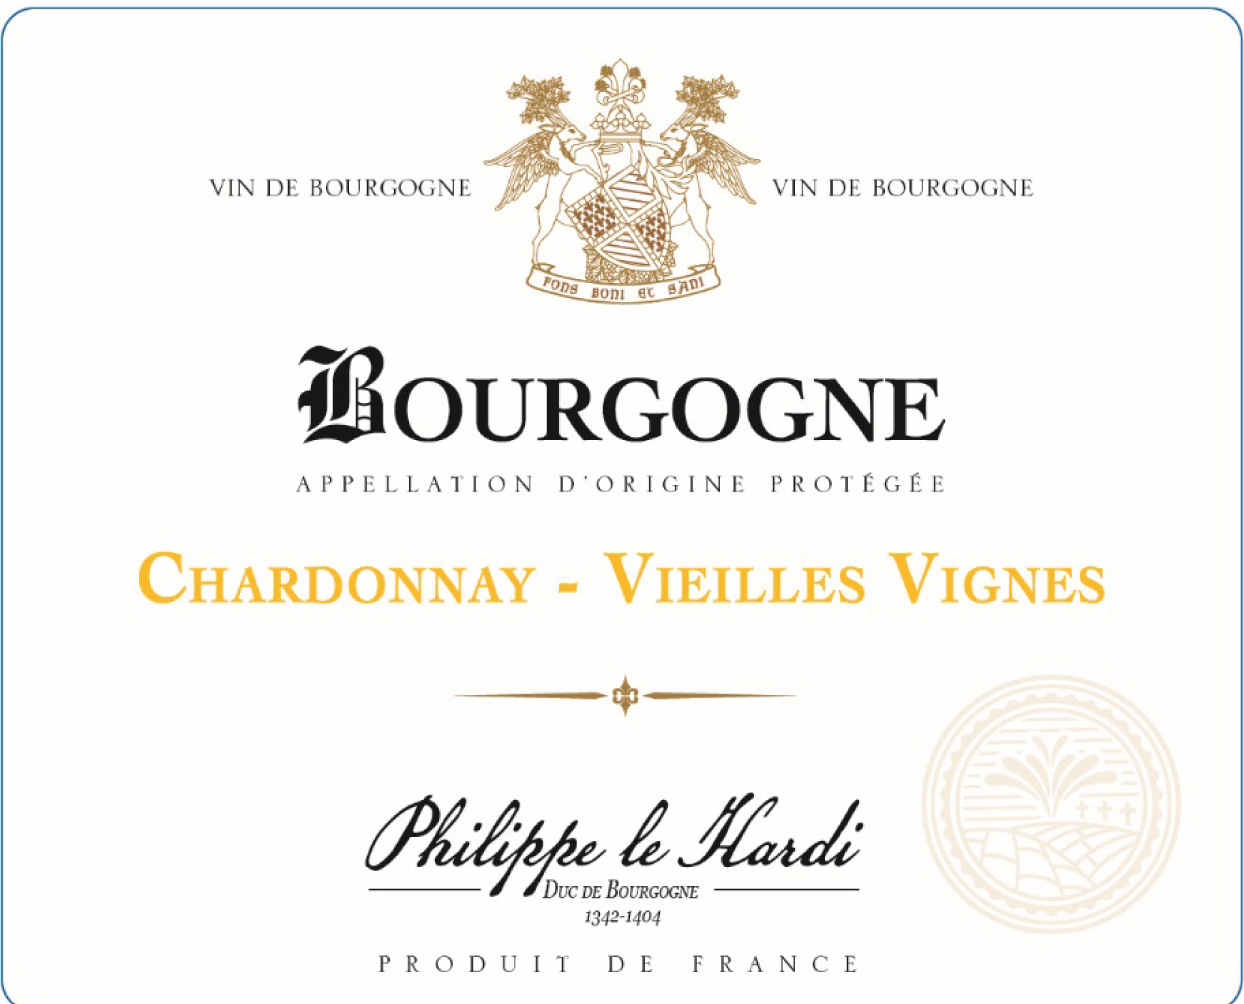 Domaine du Chateau Philippe le Hardi - Chardonnay - Vieilles Vignes label